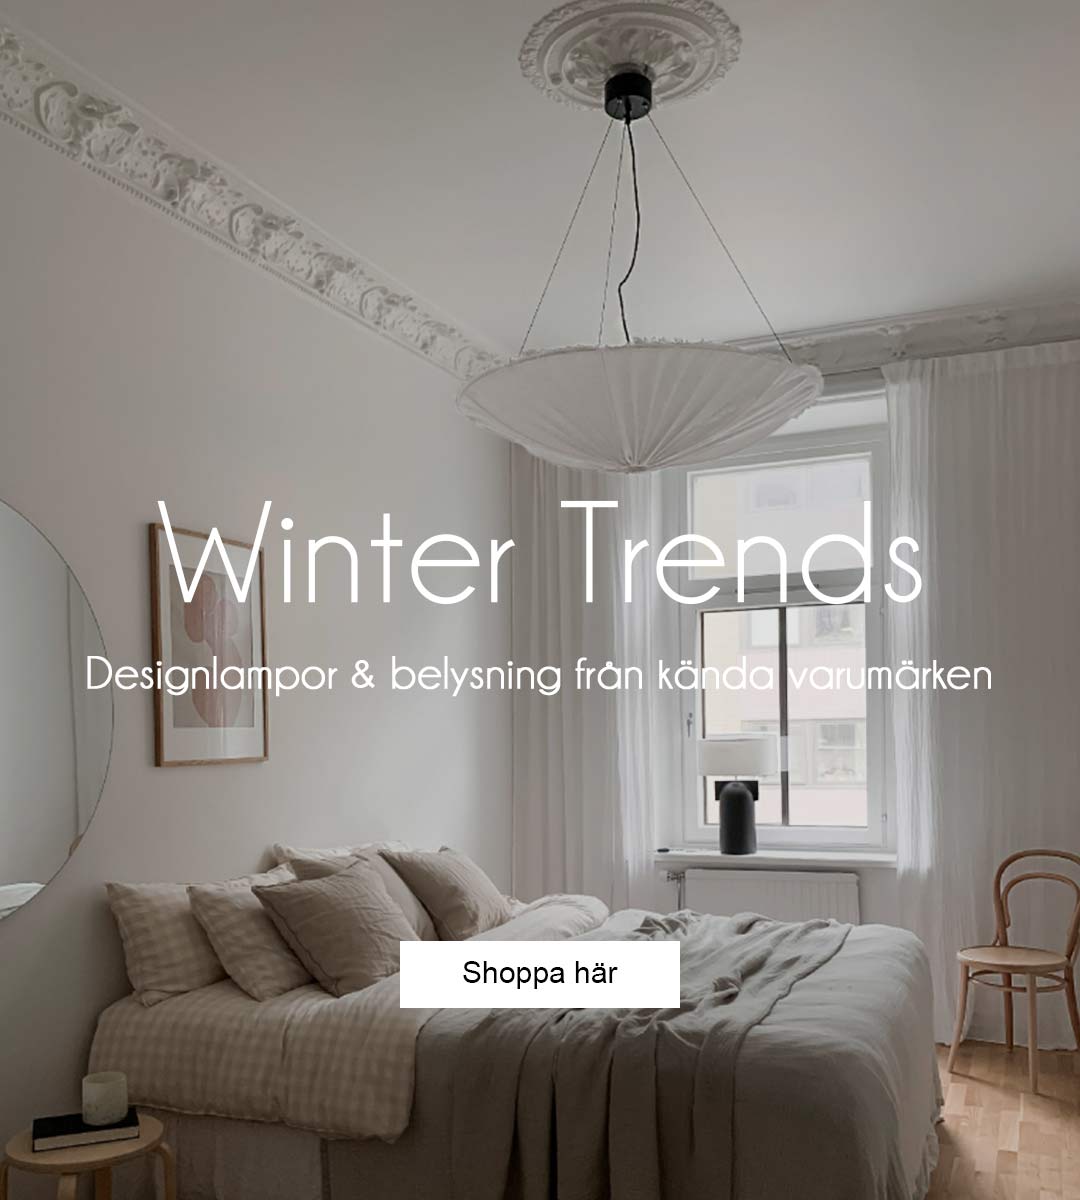 Winter trends - designlampor och belysning från kända varumärken